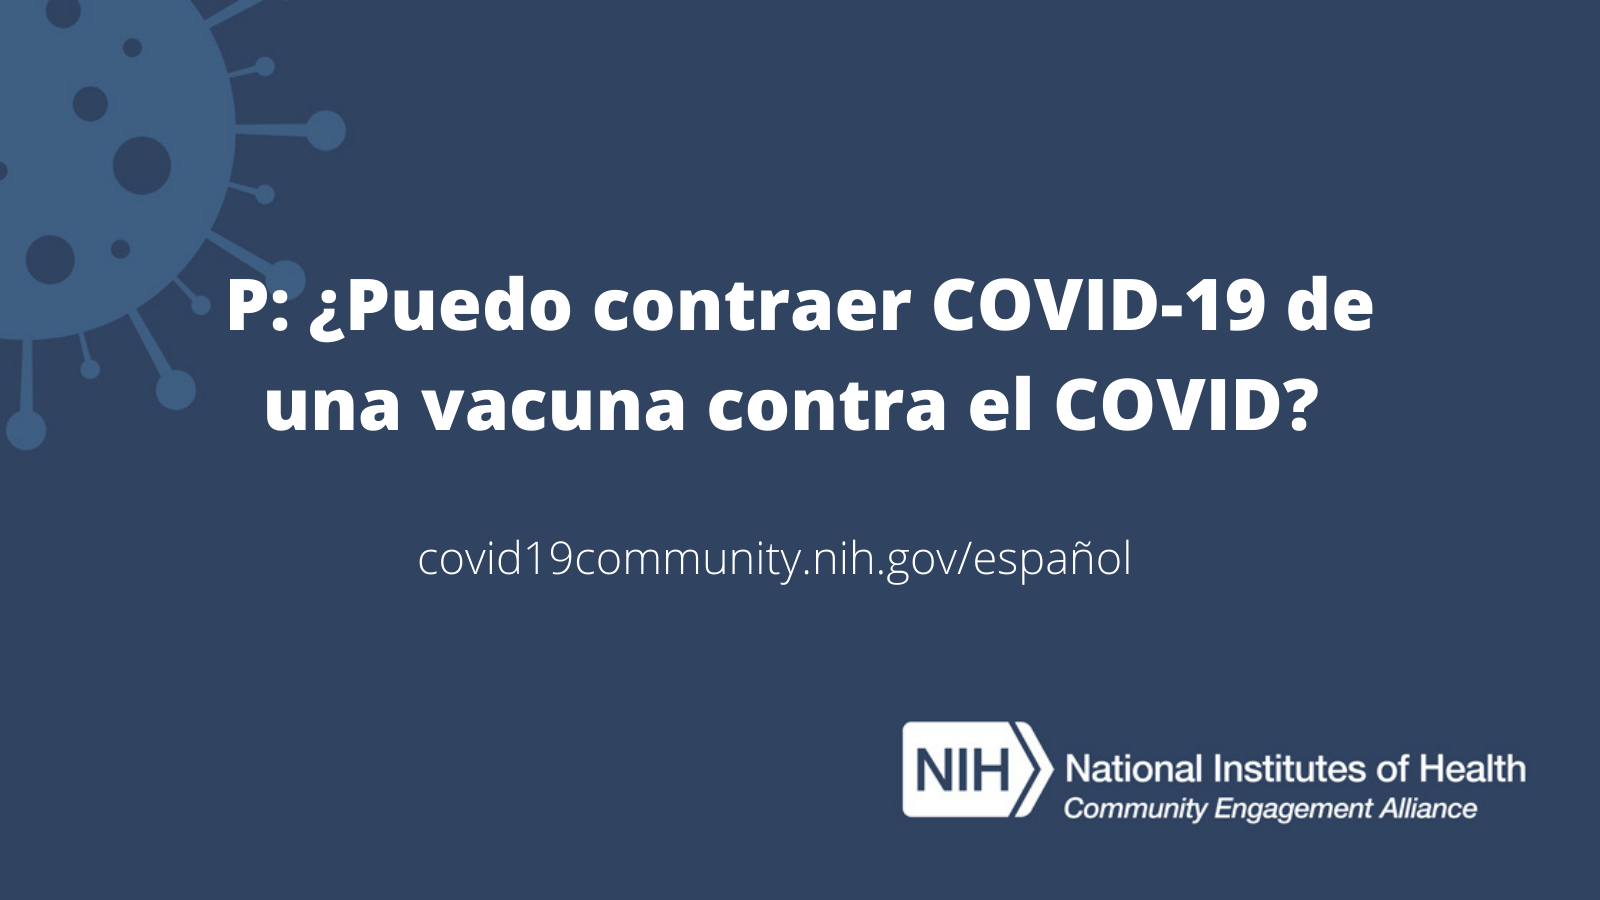 P: ¿Puedo contraer COVID-19 de una vacuna contra el COVID? 